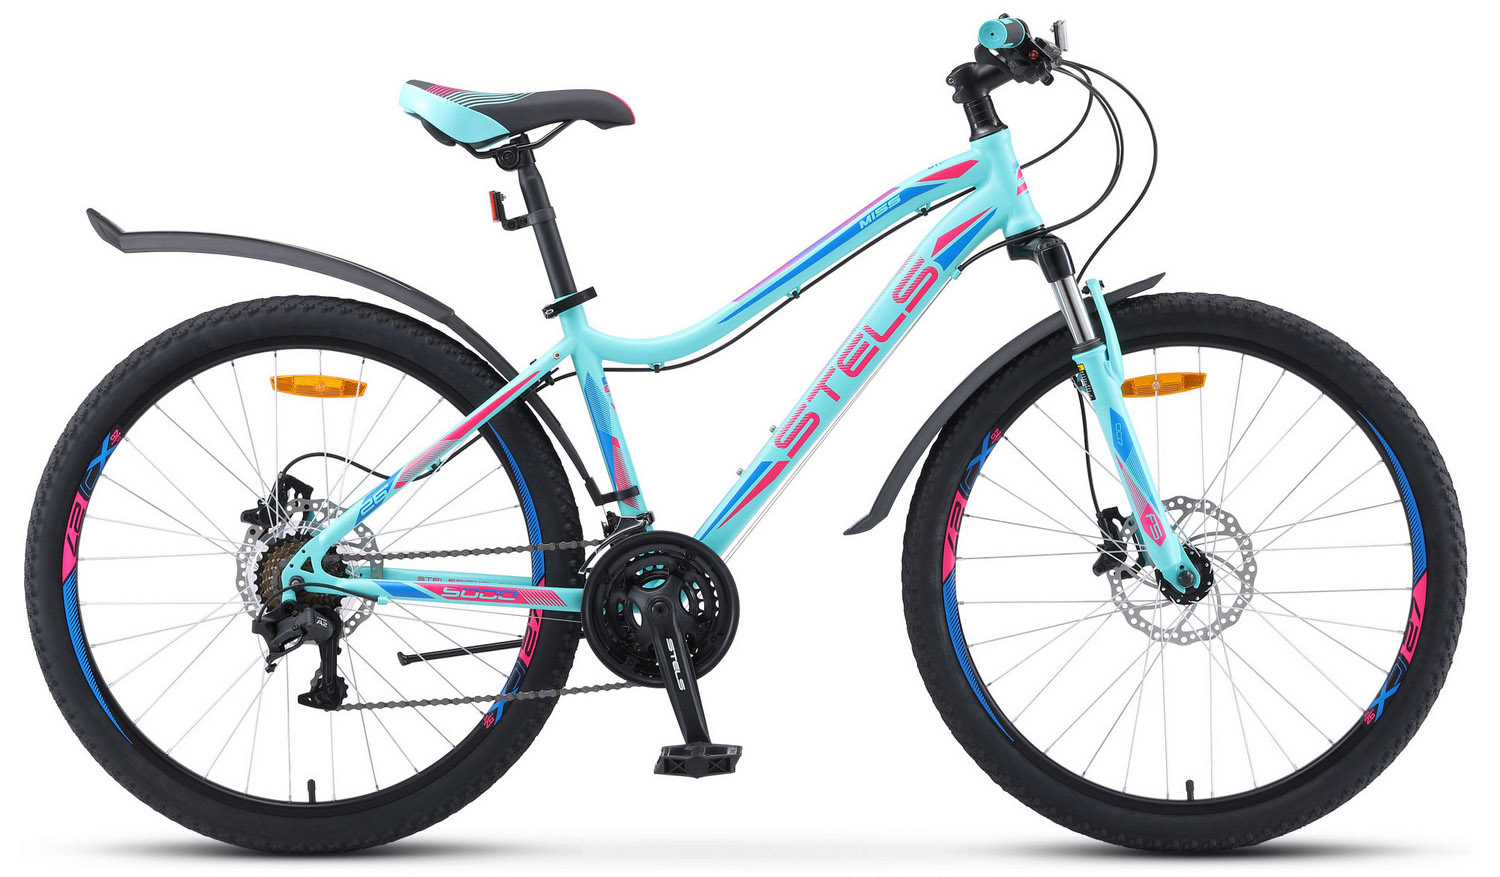  Отзывы о Женском велосипеде Stels Miss 5000 D V010 2020